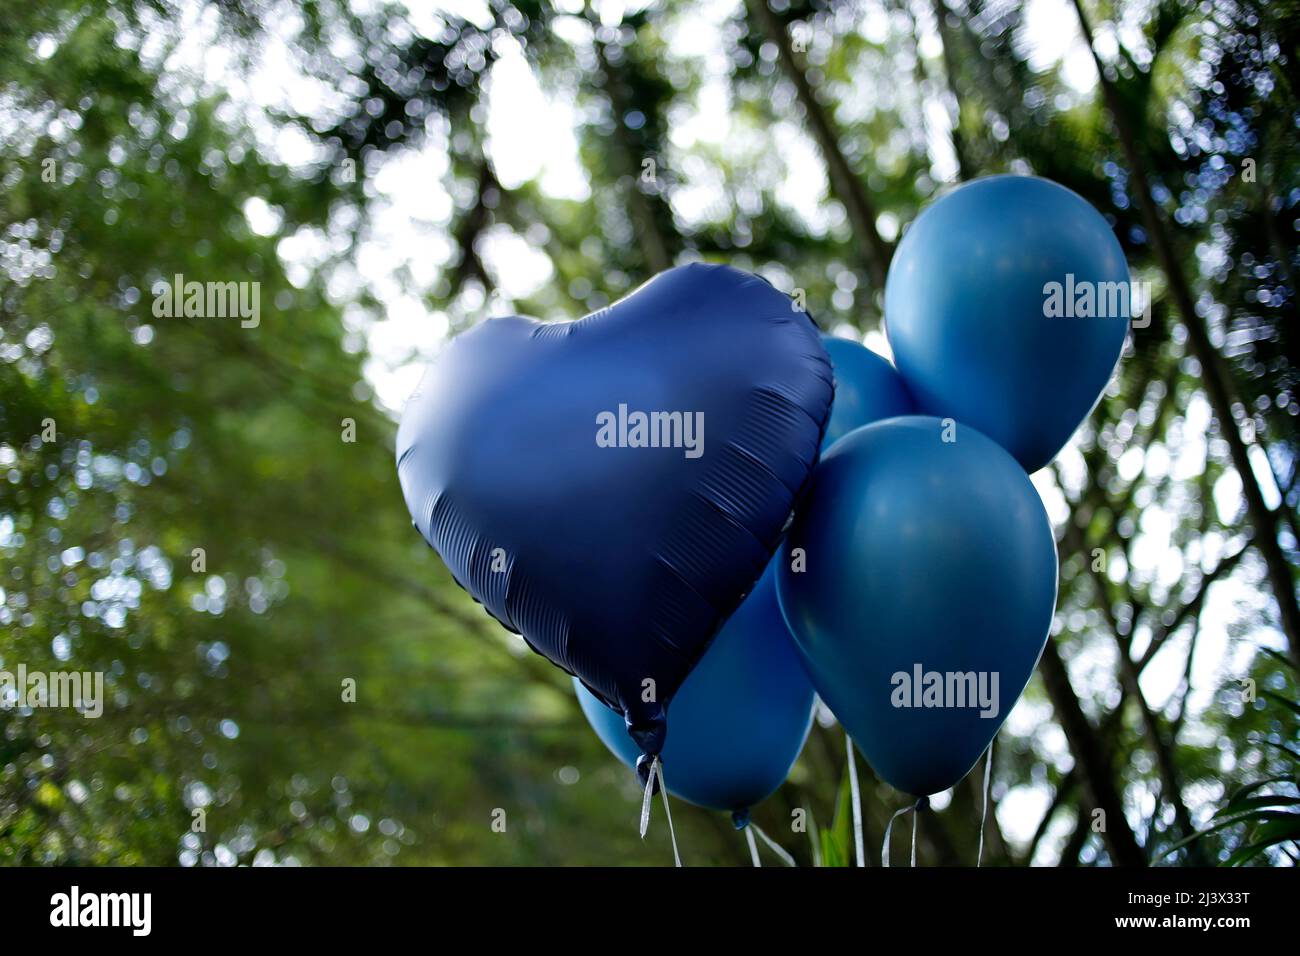 Bunte Luftballons blaue Farbe im Freien - Geburtstagsfeier und Offenbarung Tee-Konzept Stockfoto